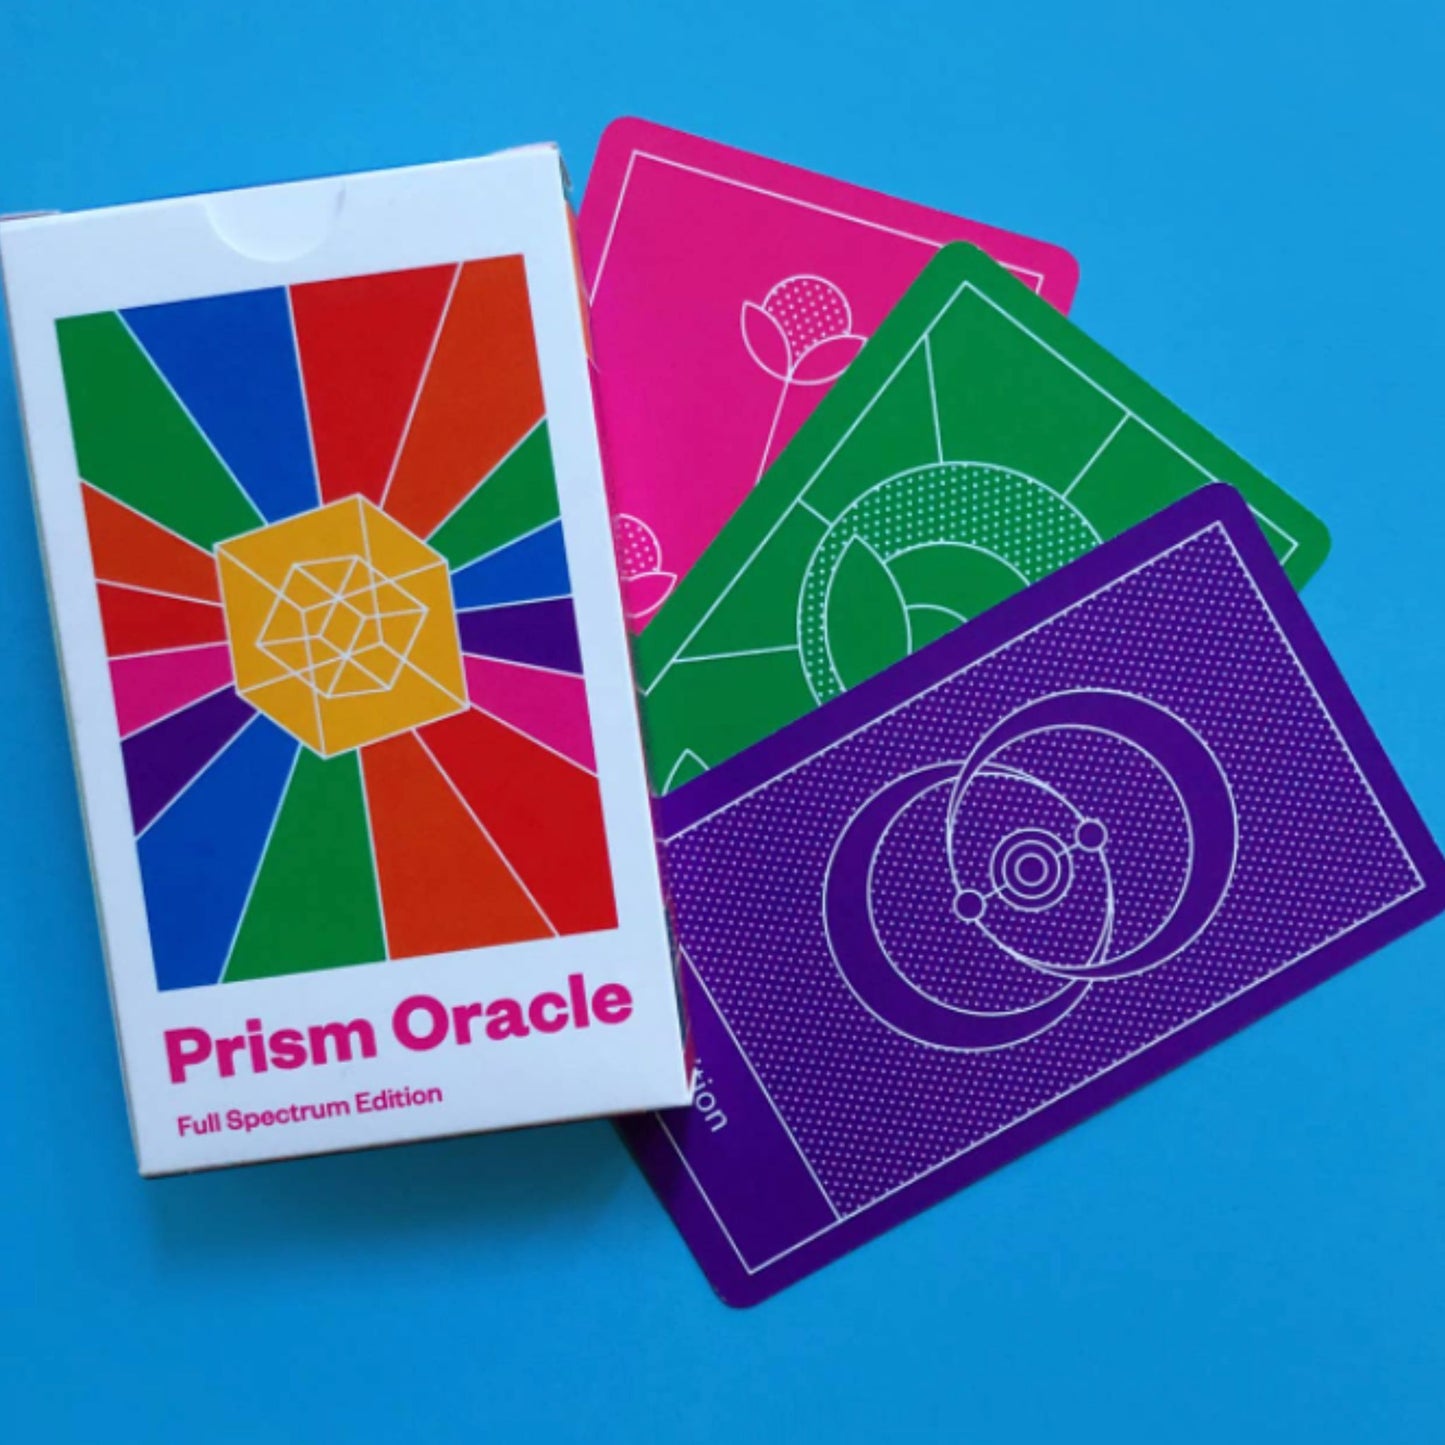 Prism Oracle